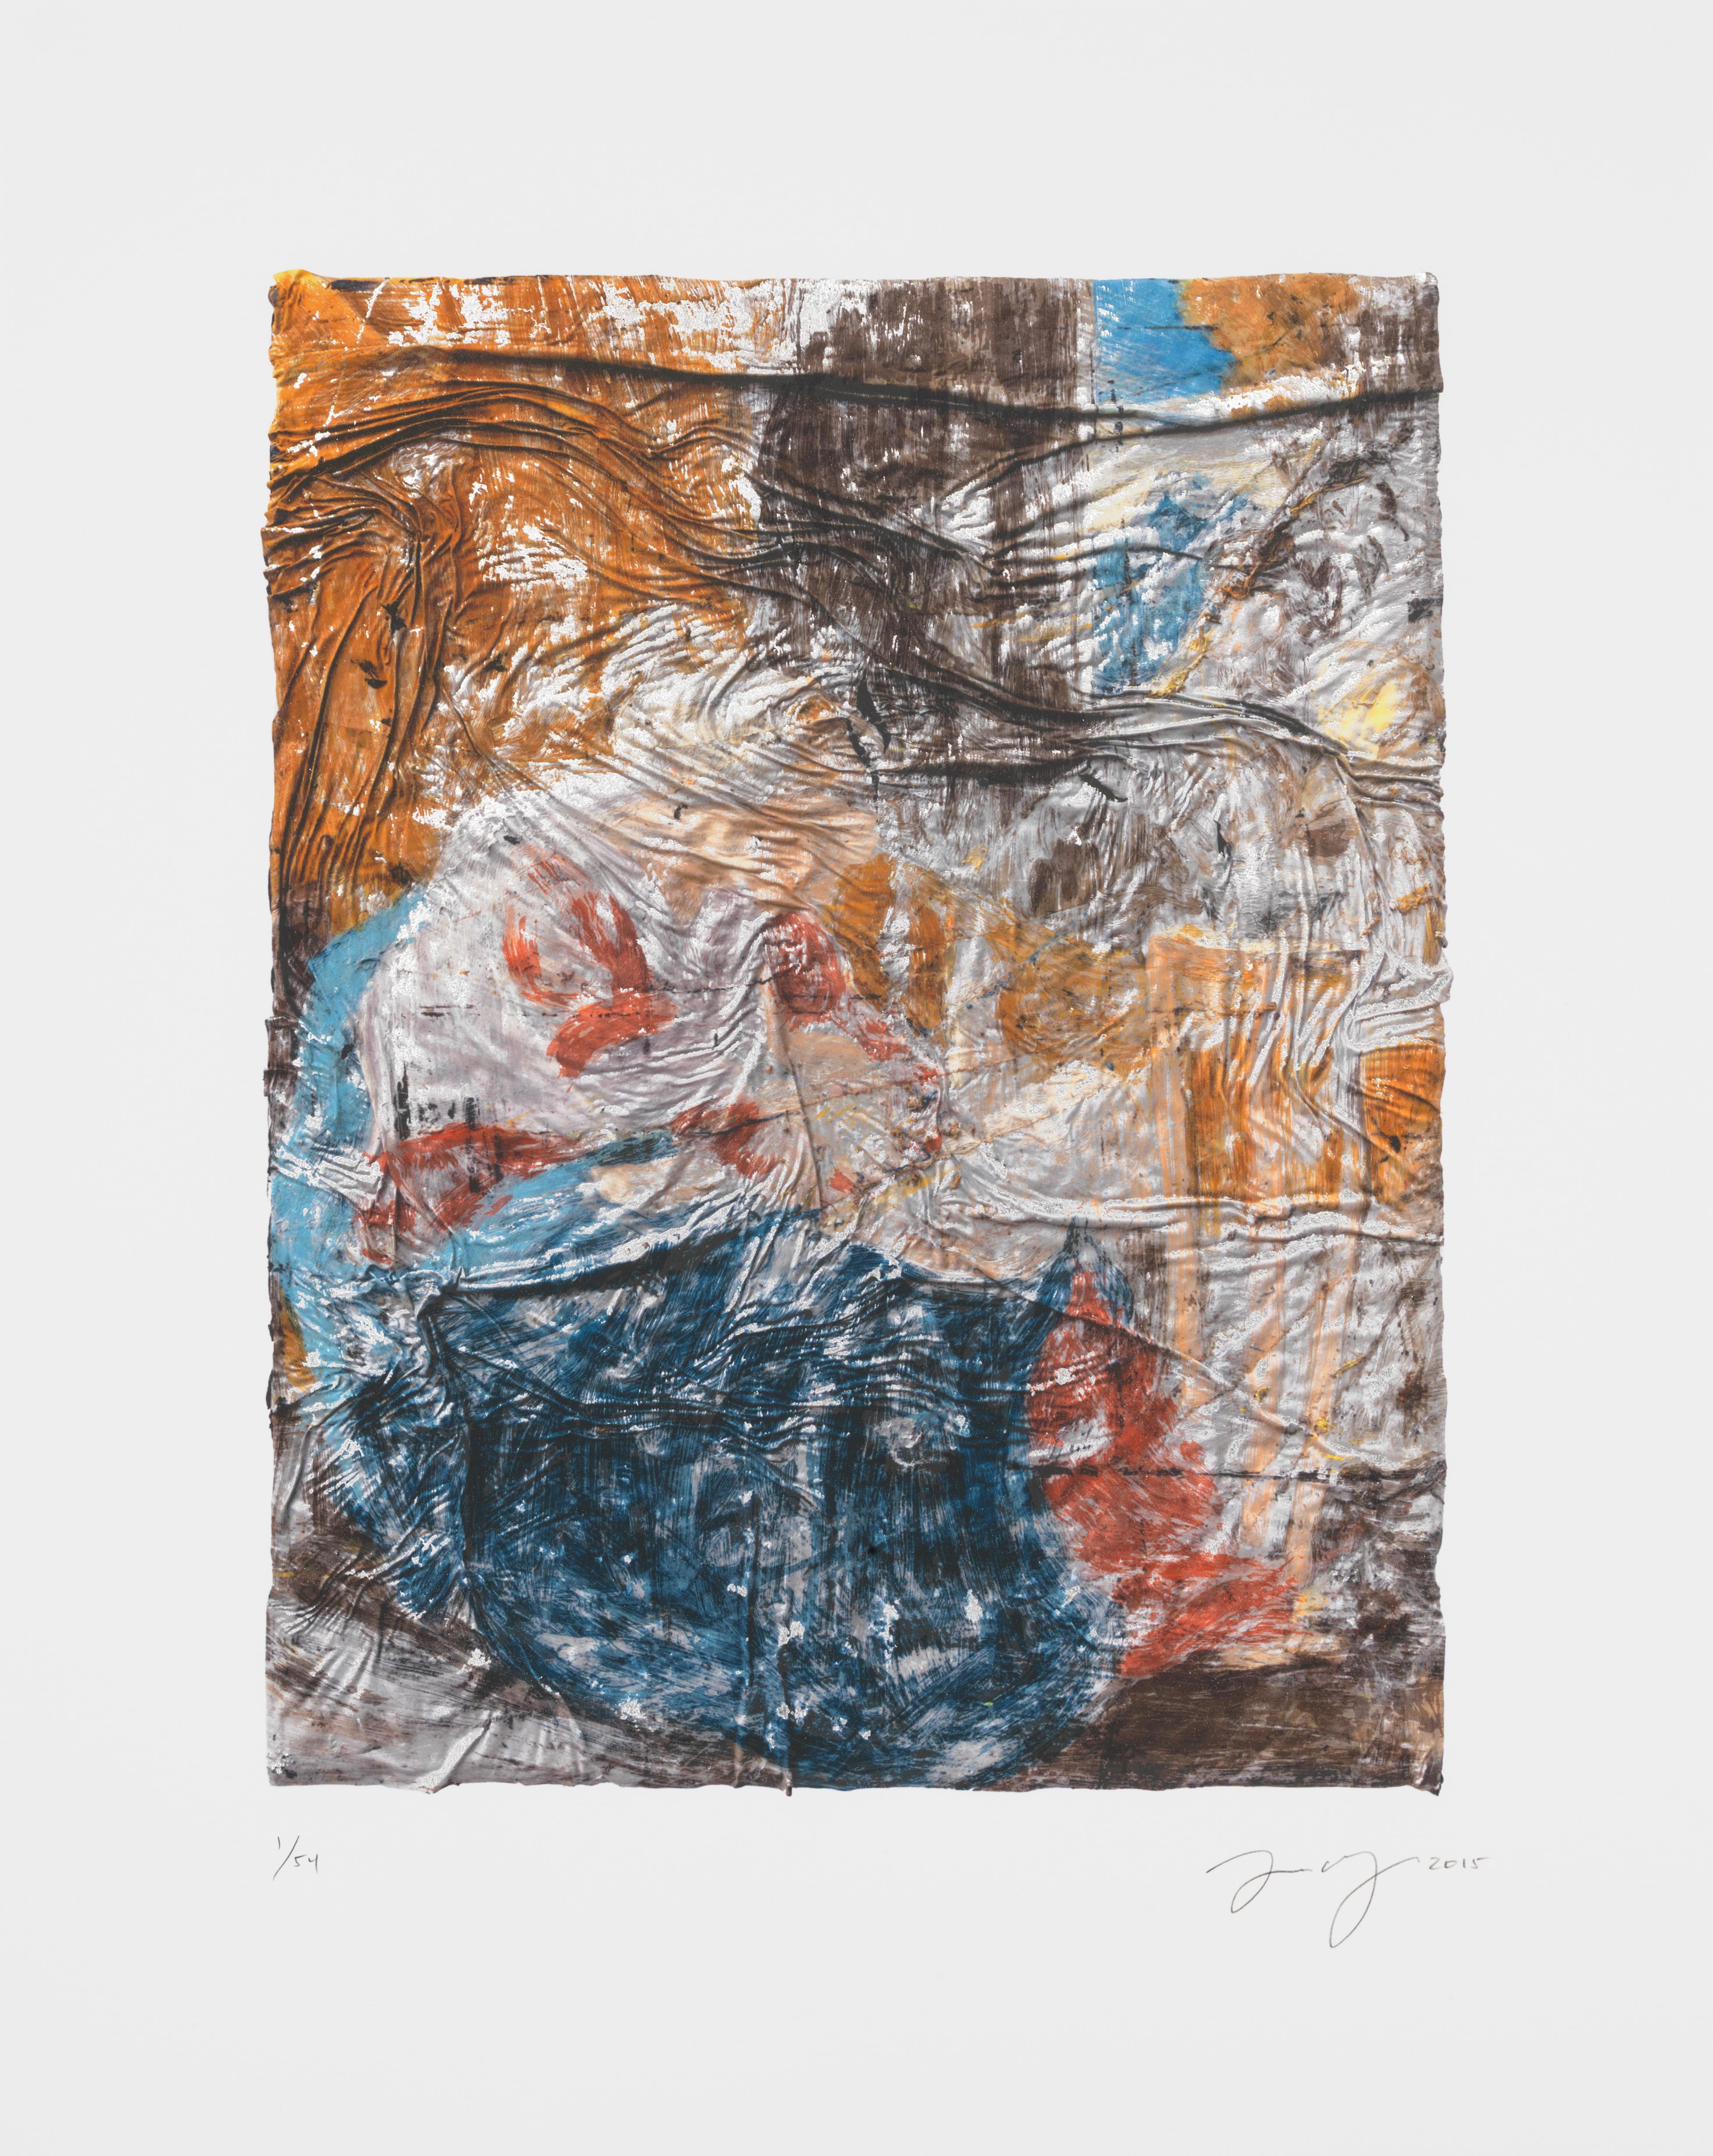 Angel Otero est connu pour ses peintures à l'huile composées de champs de couleurs saignantes qui se plissent et se déforment pour créer des textures topographiques. Dans cette édition visuellement fascinante, Untitled (SK-PH), l'artiste a aplati